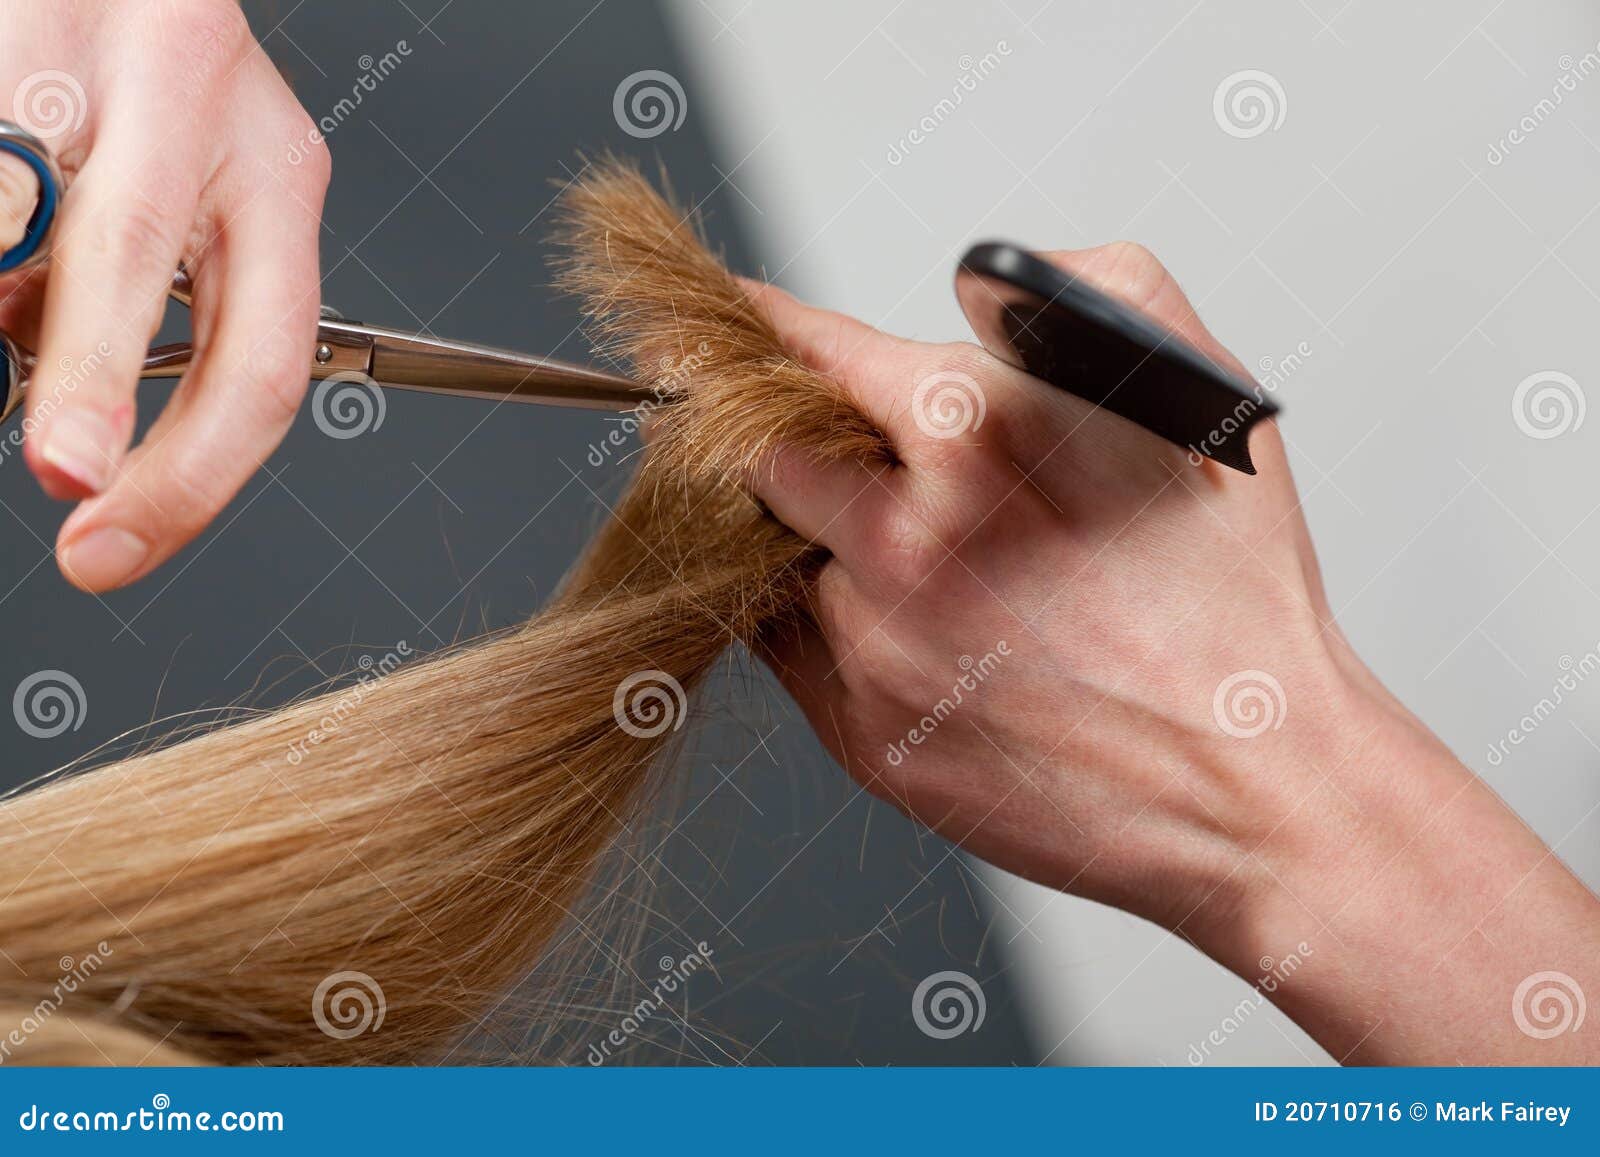 cutting hair